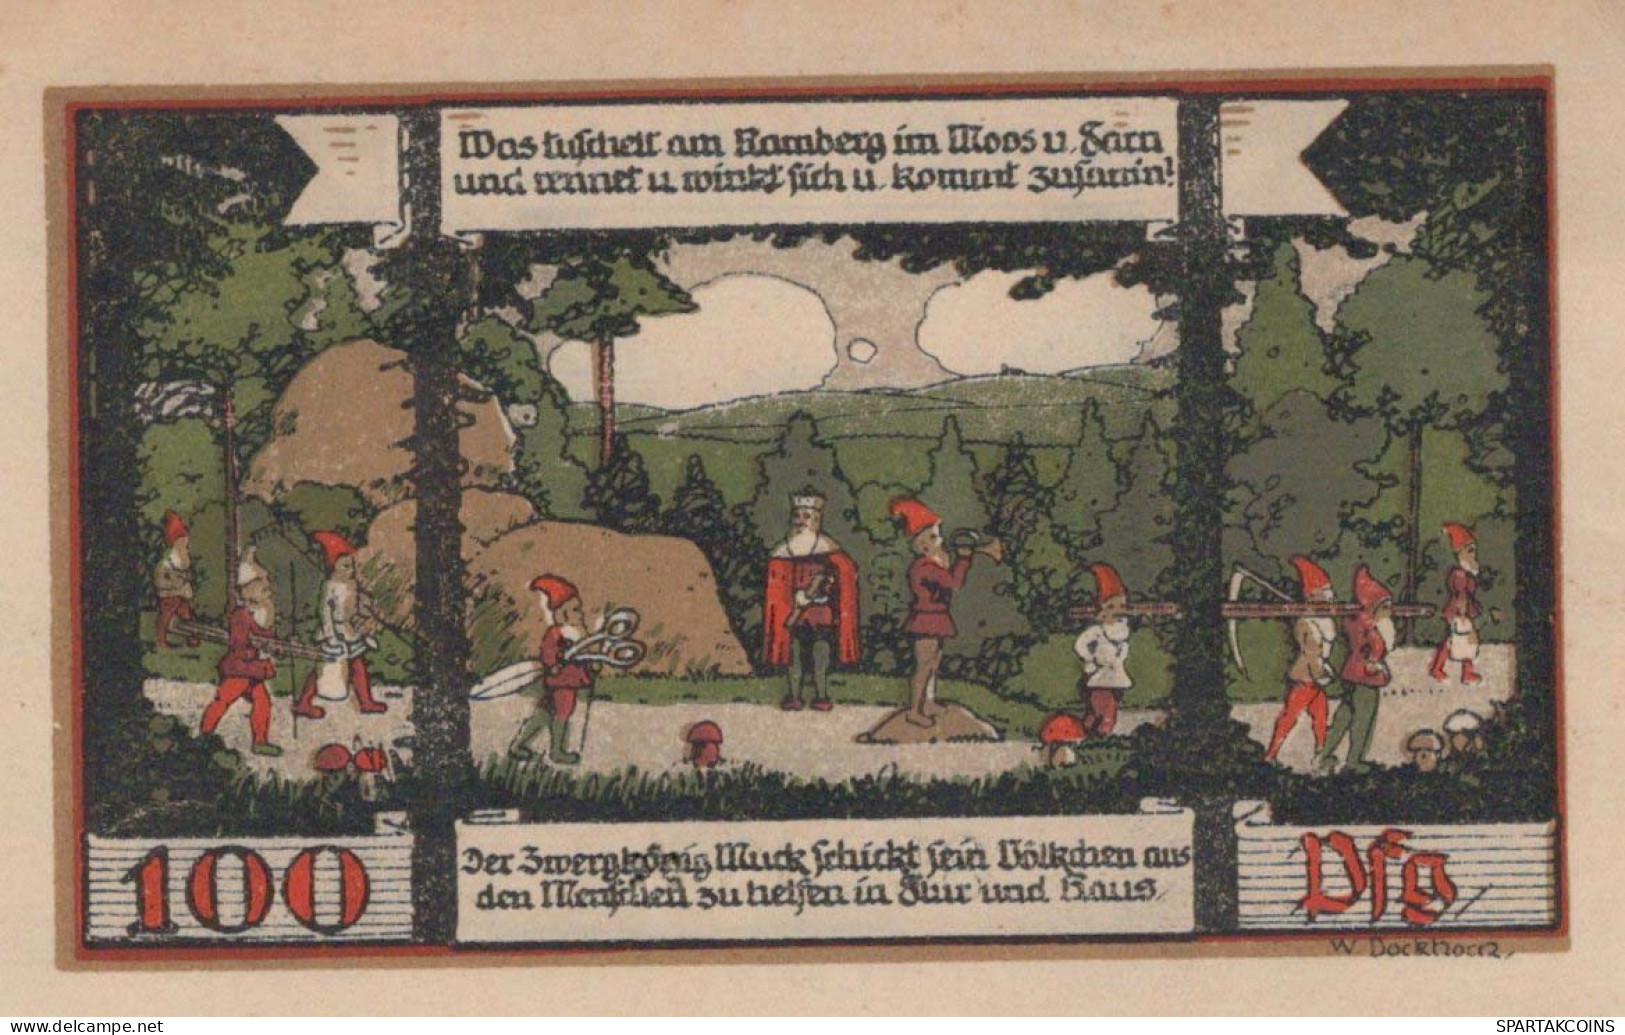 100 PFENNIG 1921 Stadt BALLENSTEDT Anhalt UNC DEUTSCHLAND Notgeld #PI470 - [11] Local Banknote Issues